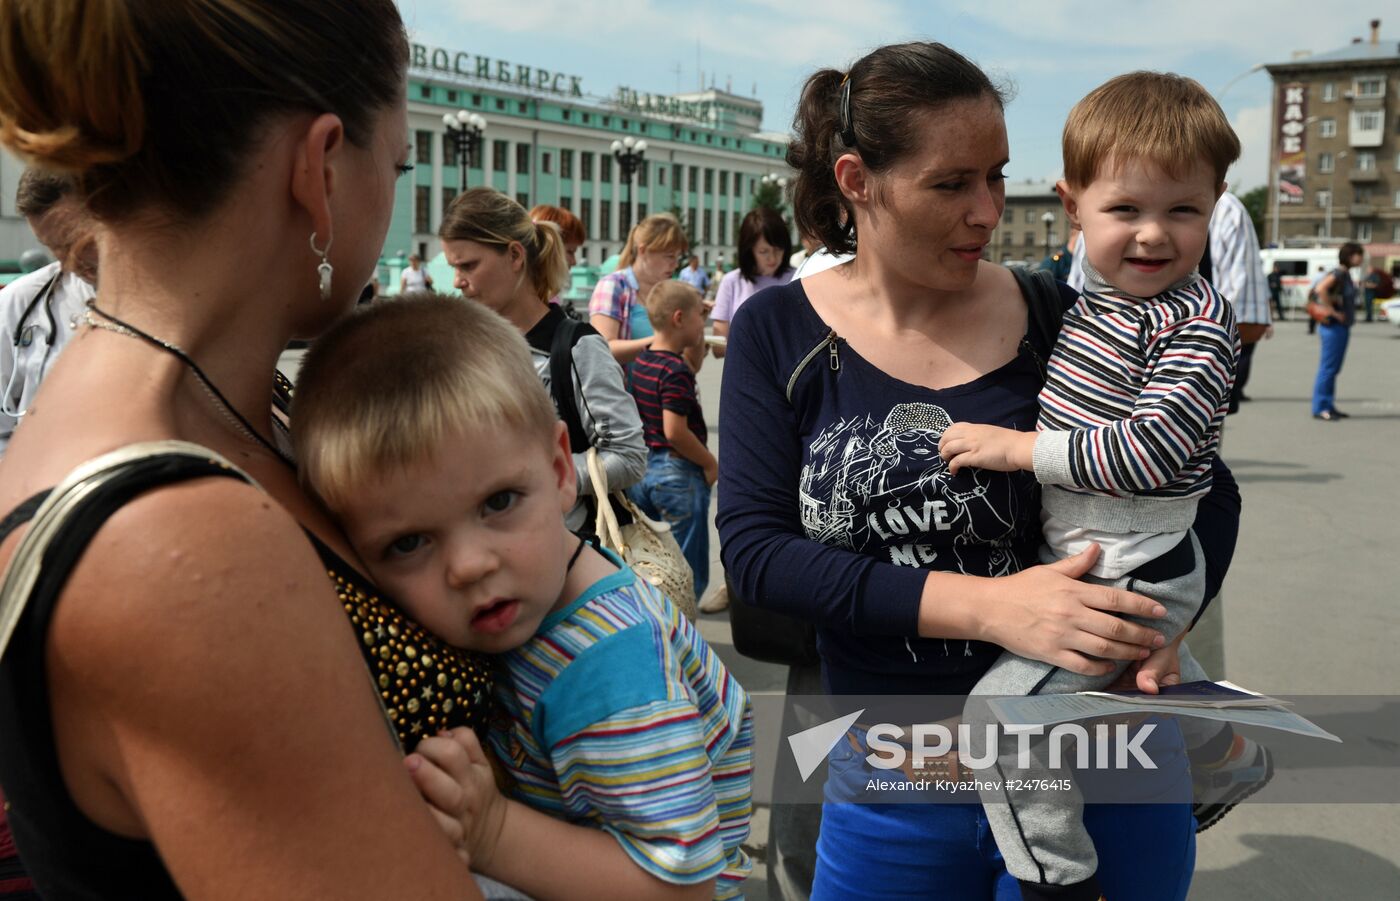 Ukrainian refugees arrive in Novosibirsk